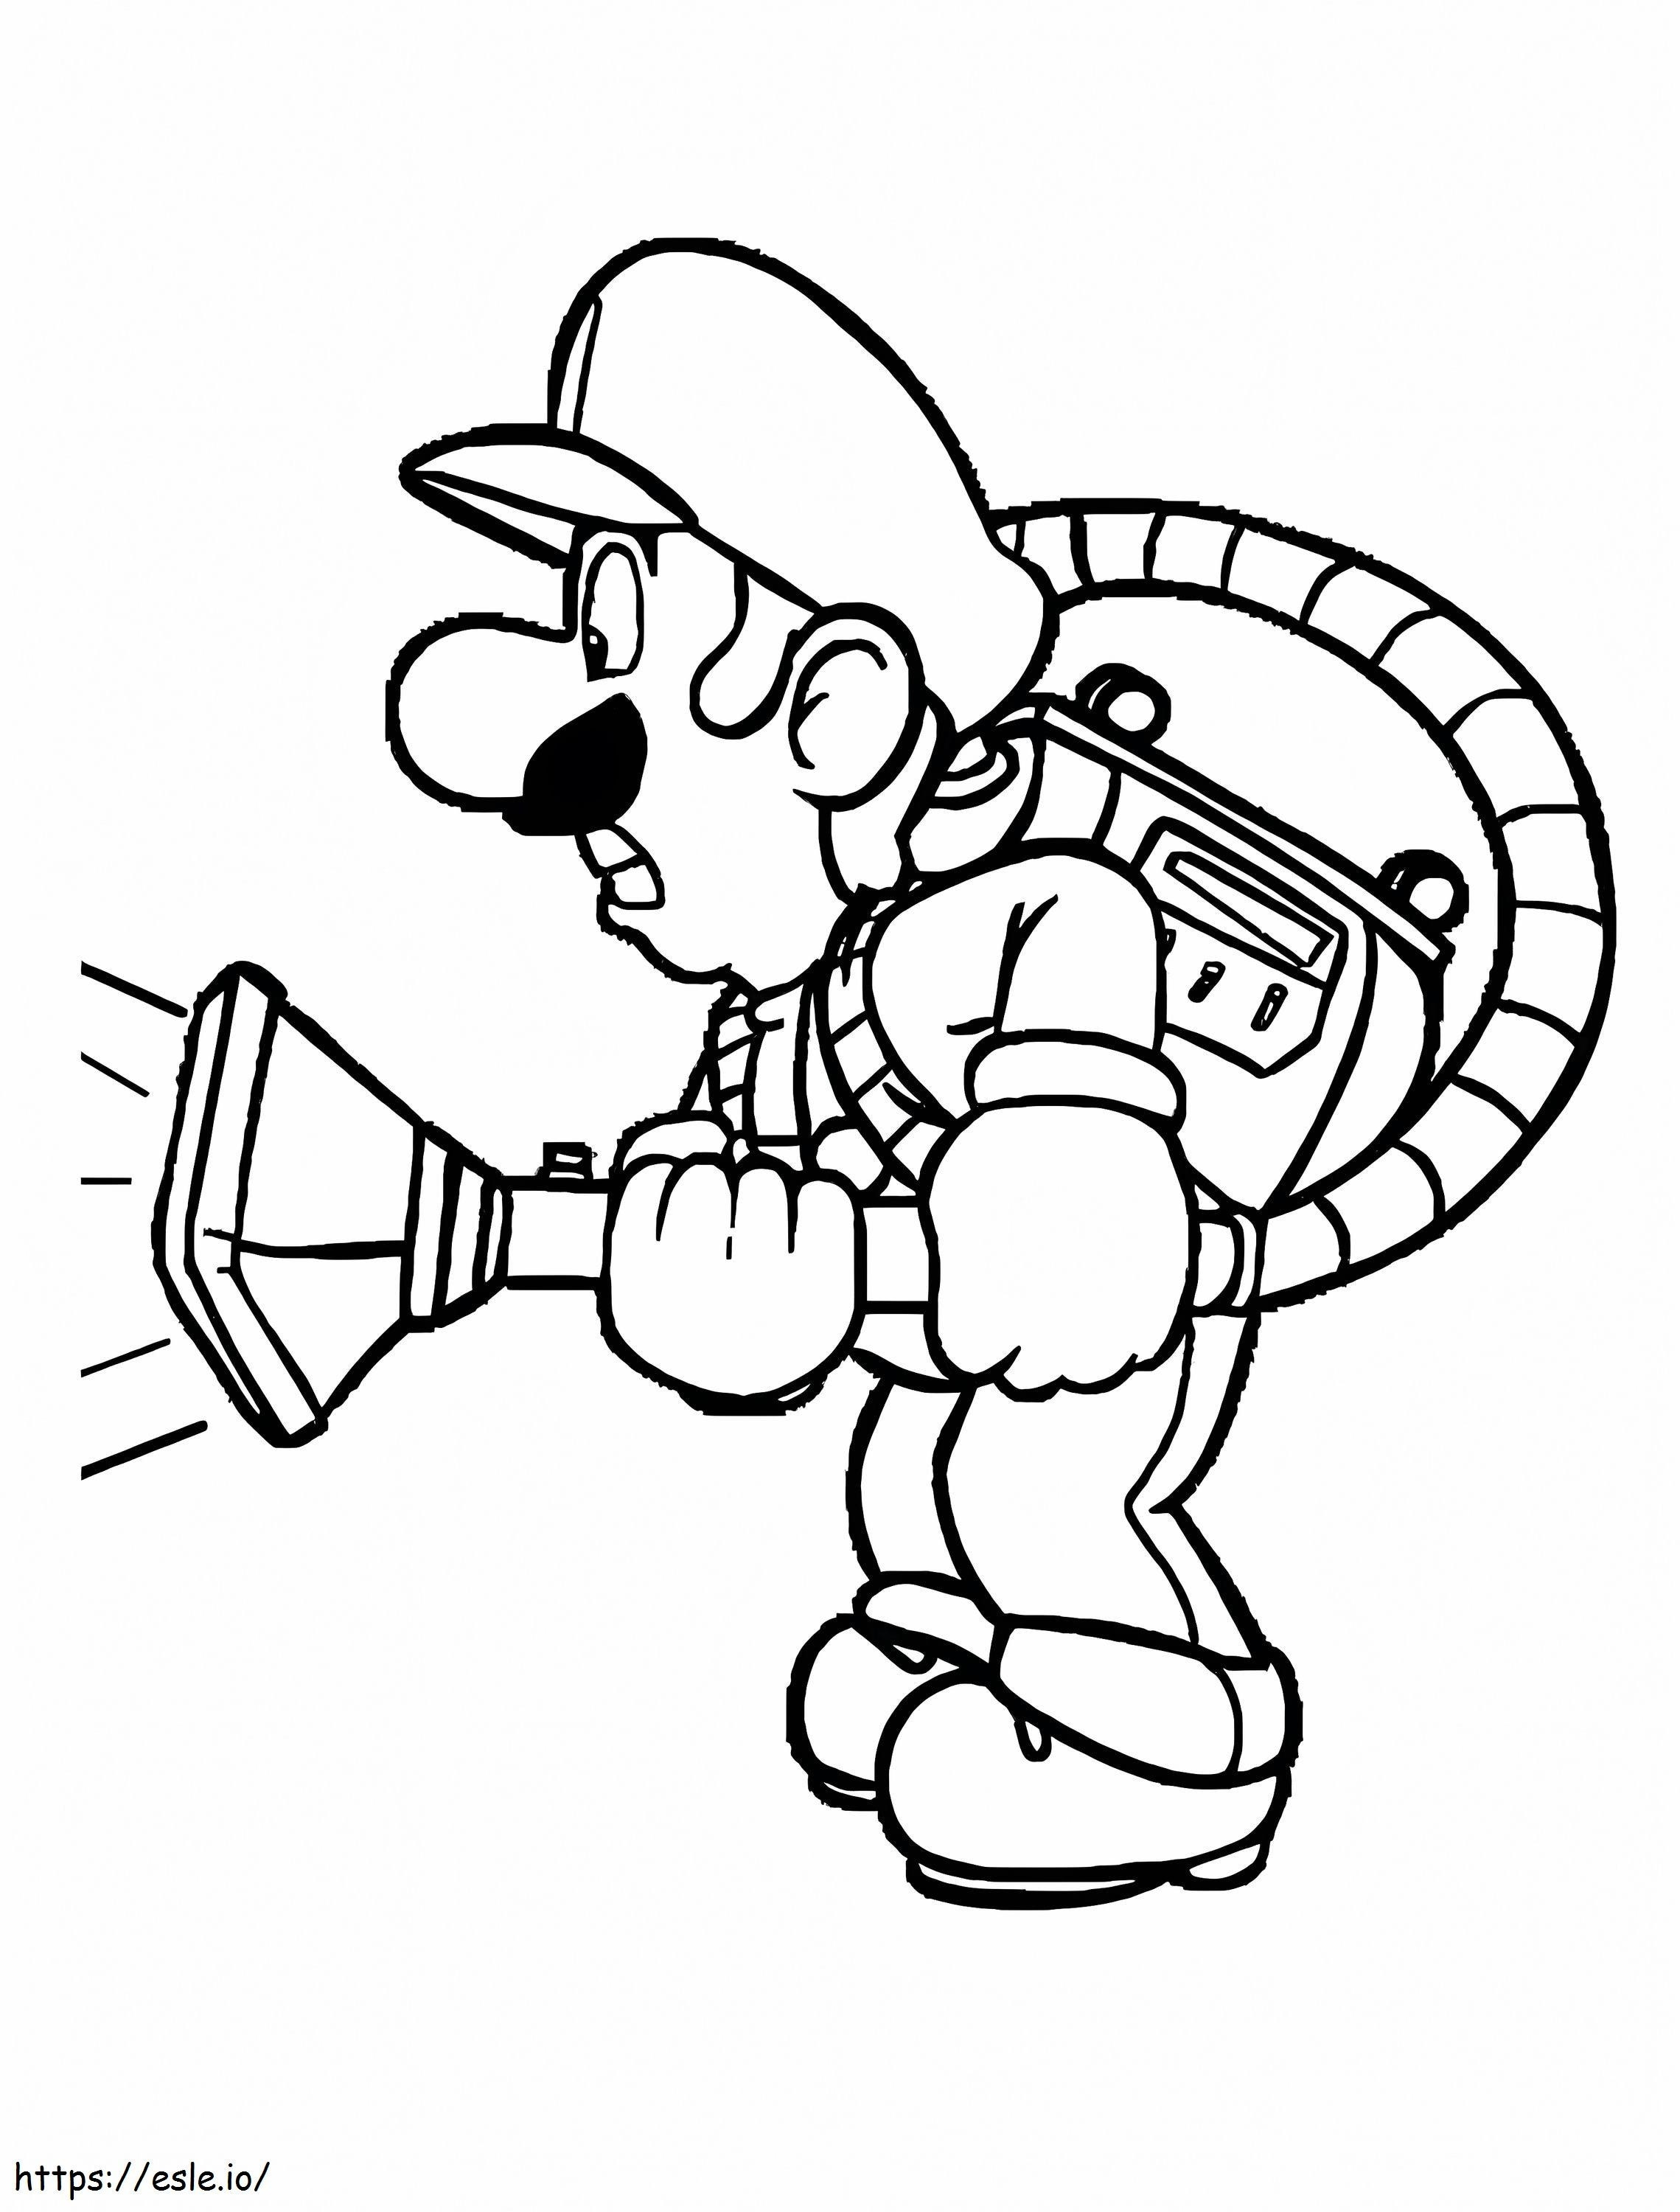 Luigi De Mario 778X1024 coloring page